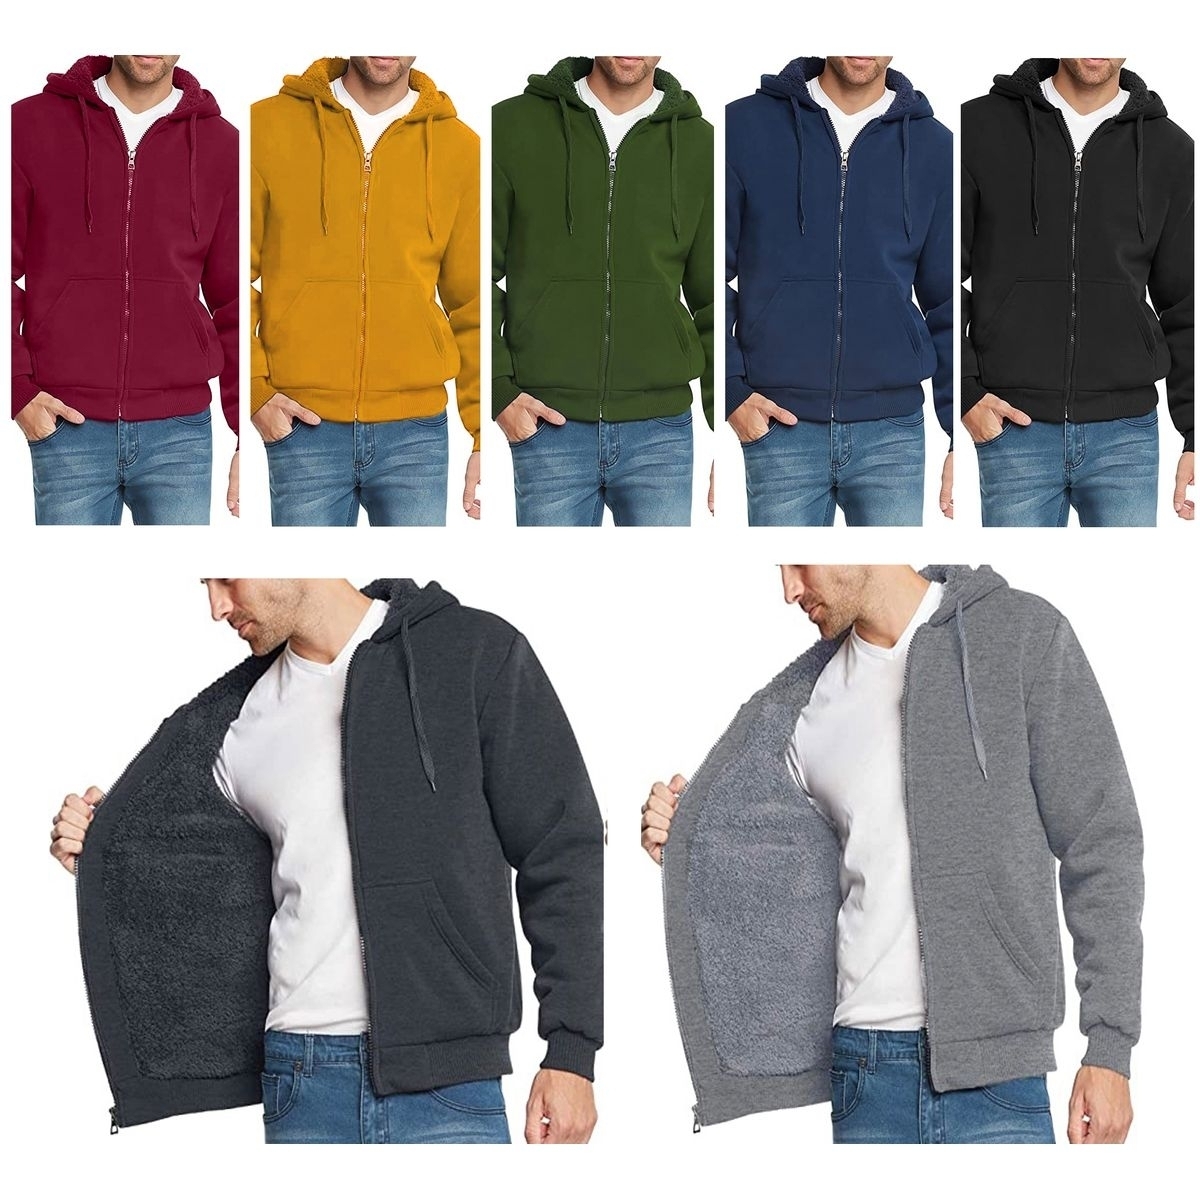 Men's Heavyweight Sherpa Lined Fleece Zip-Up Hoodie Sweater Jacket - Grey, Medium